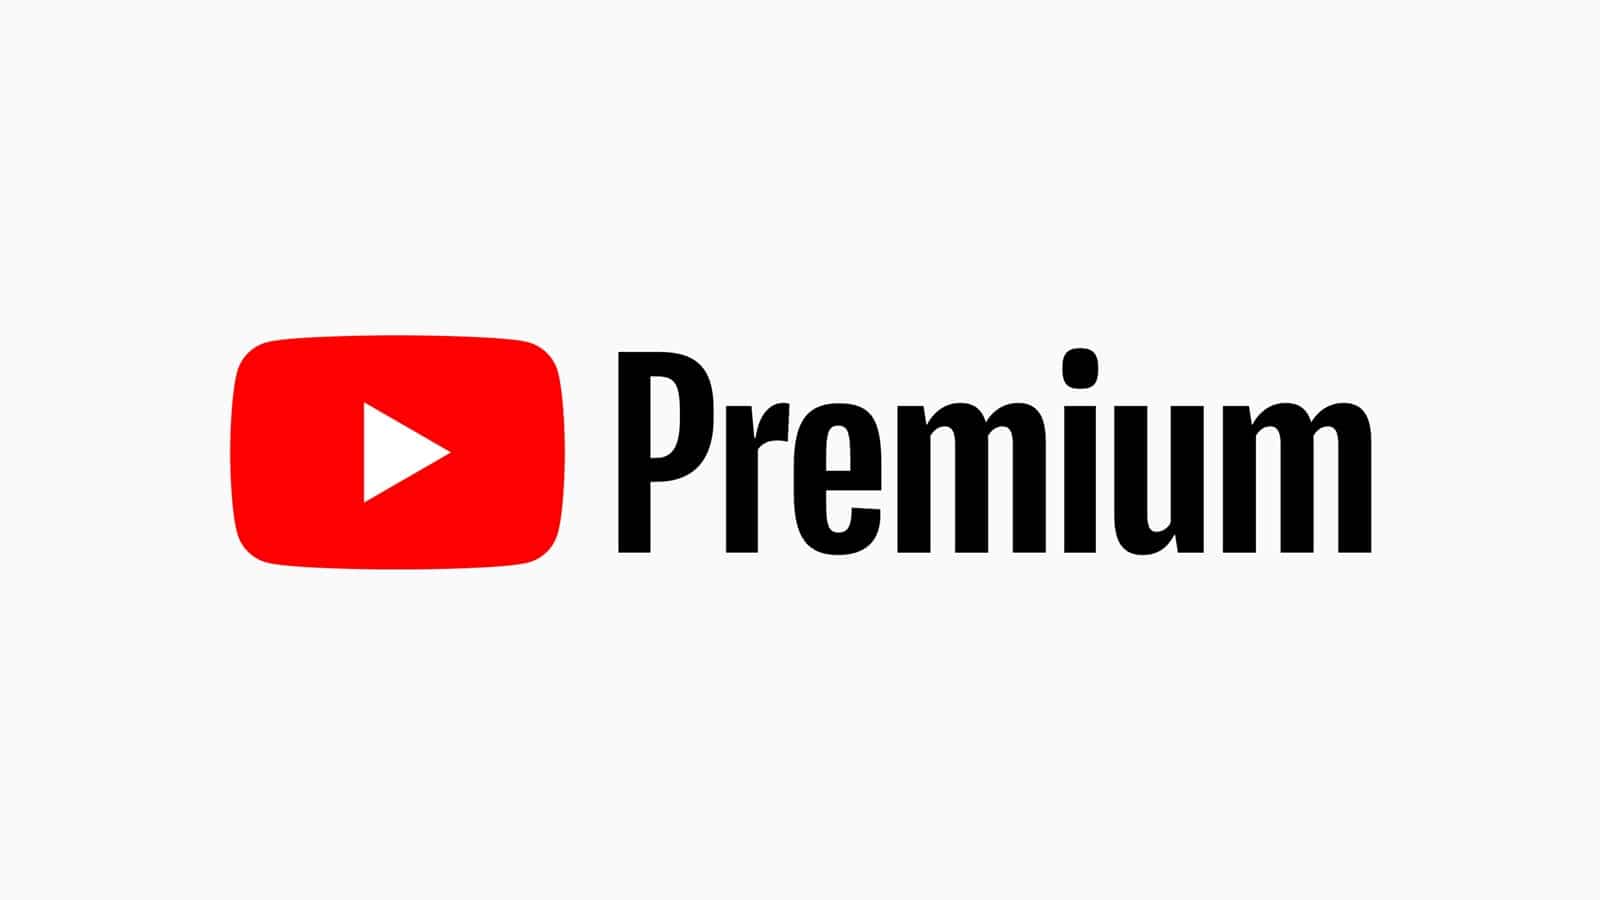 youtube premium apokta pente nees dynatotites 64351f963fa10